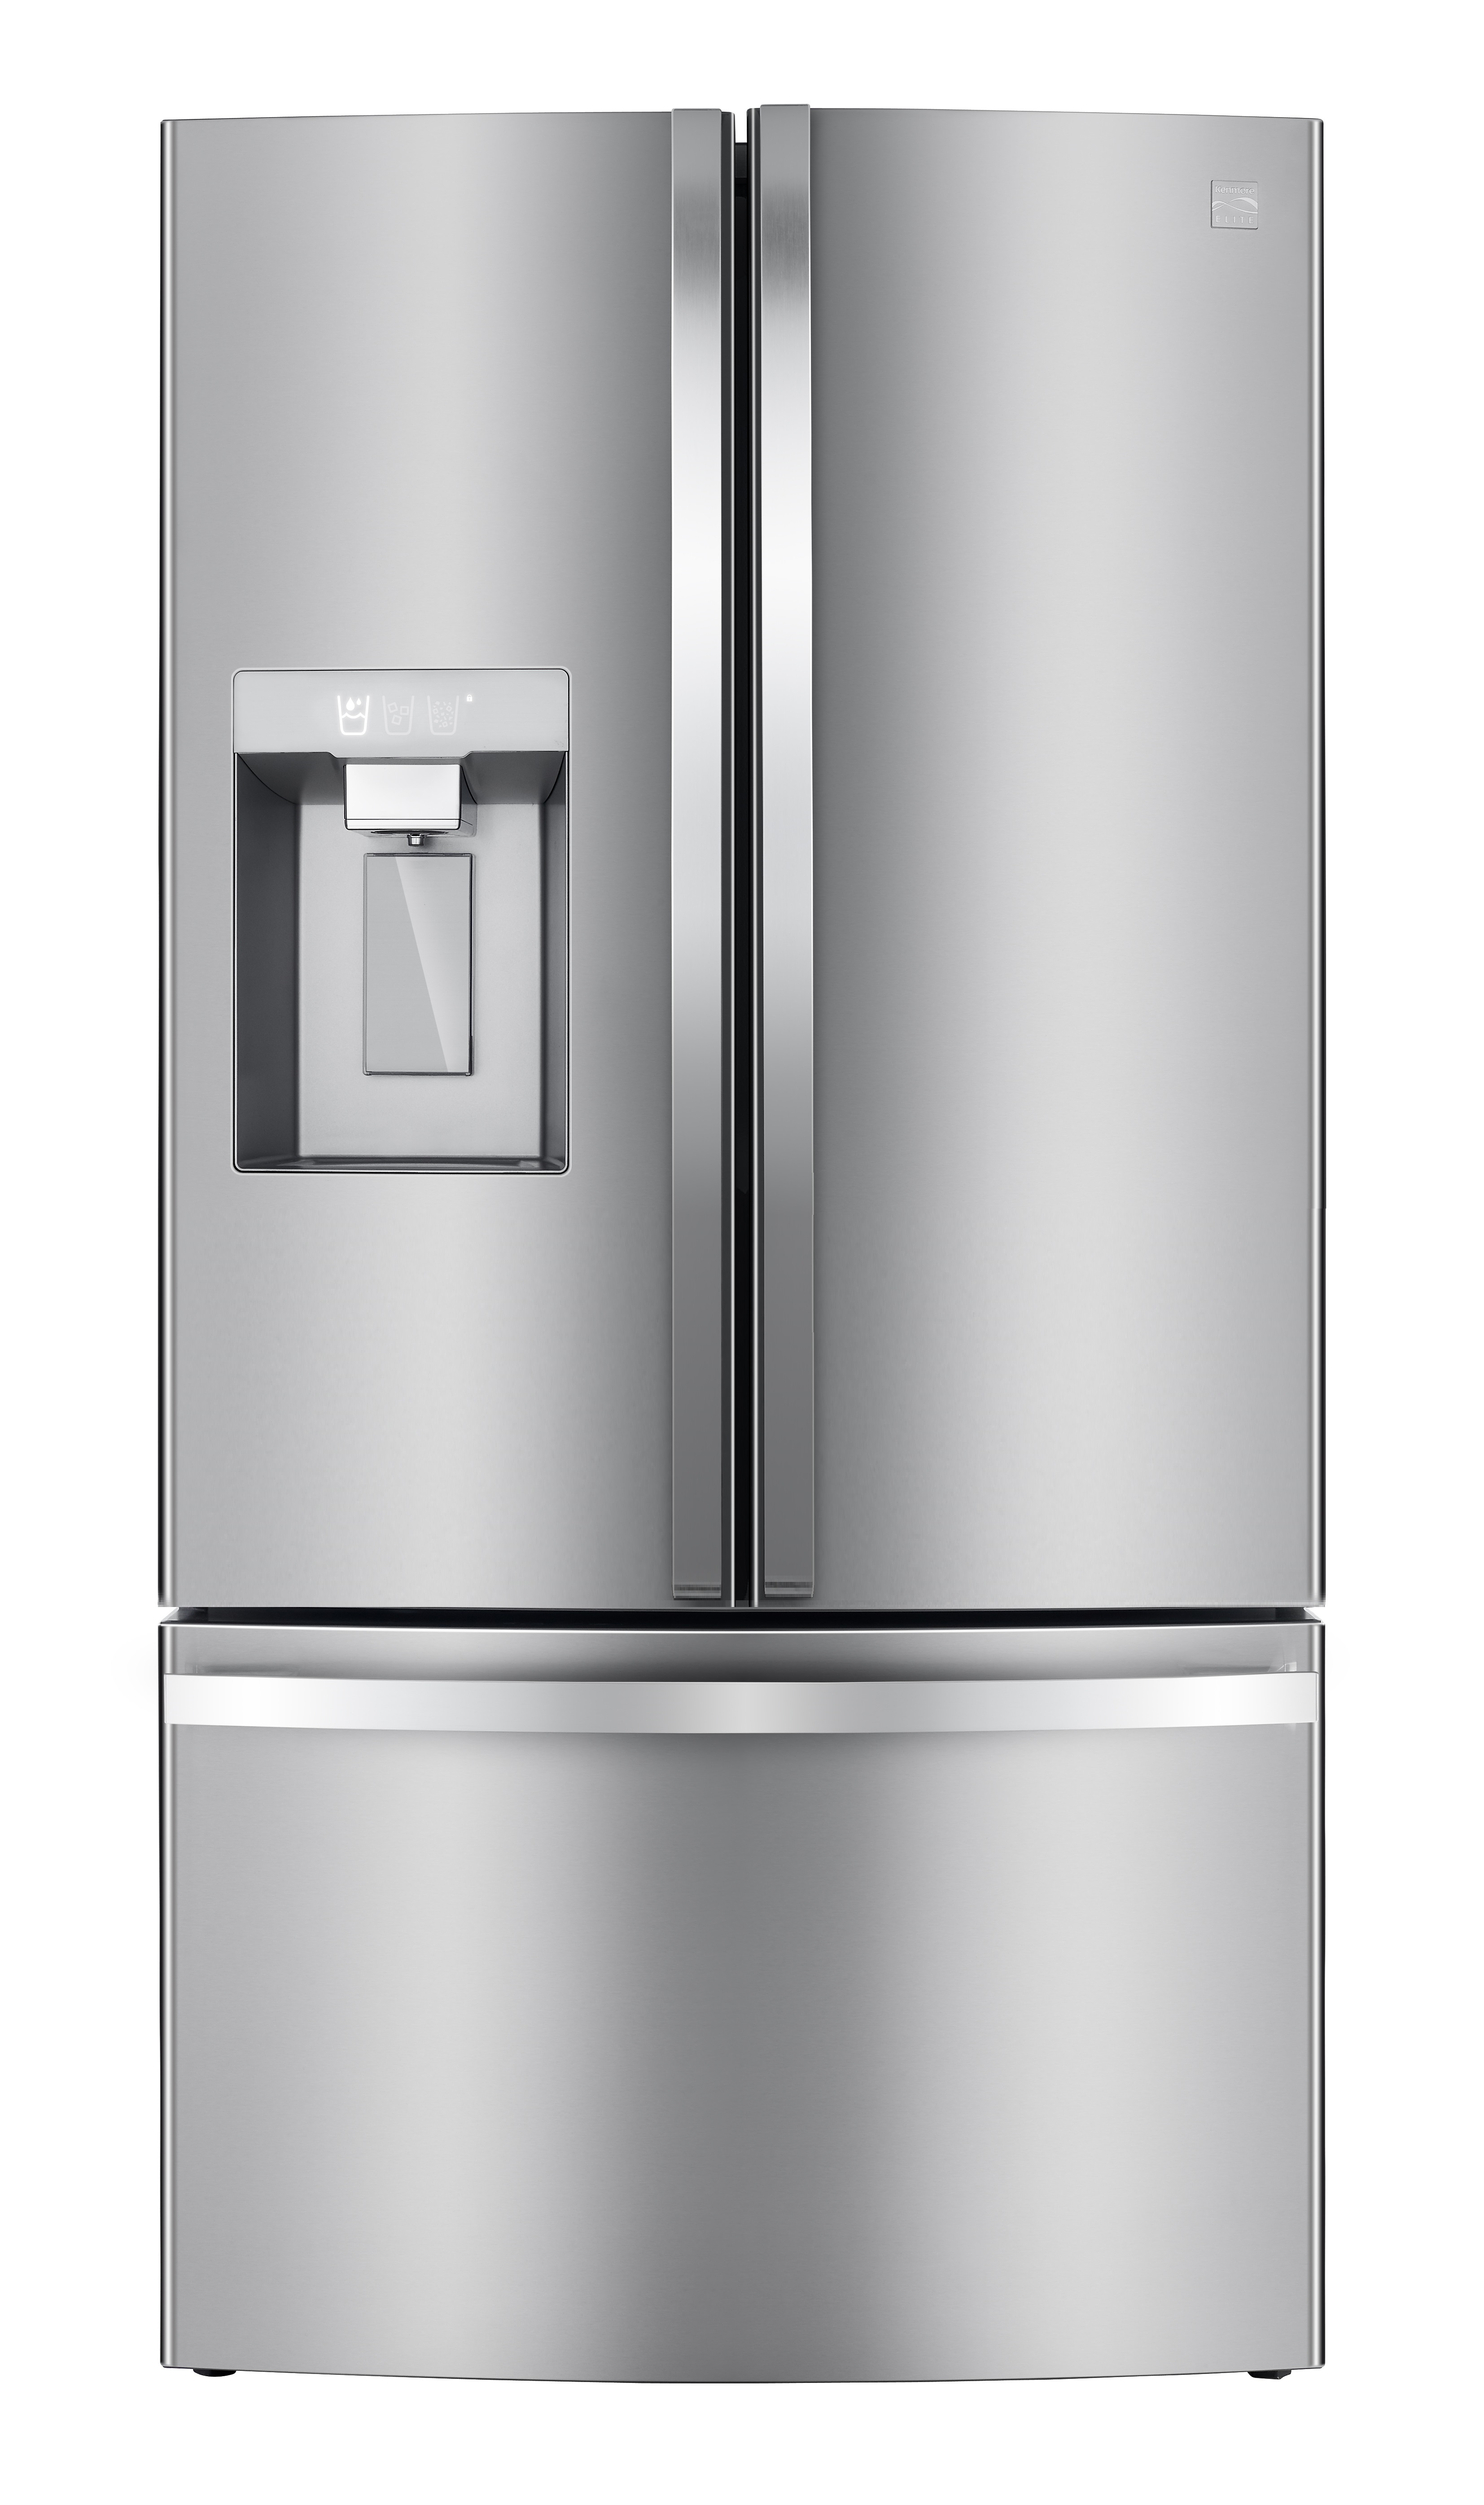 Kenmore Elite 73315 30.6 cu. ft. Large Capacity Smart French Door Kenmore Elite Stainless Steel Refrigerator